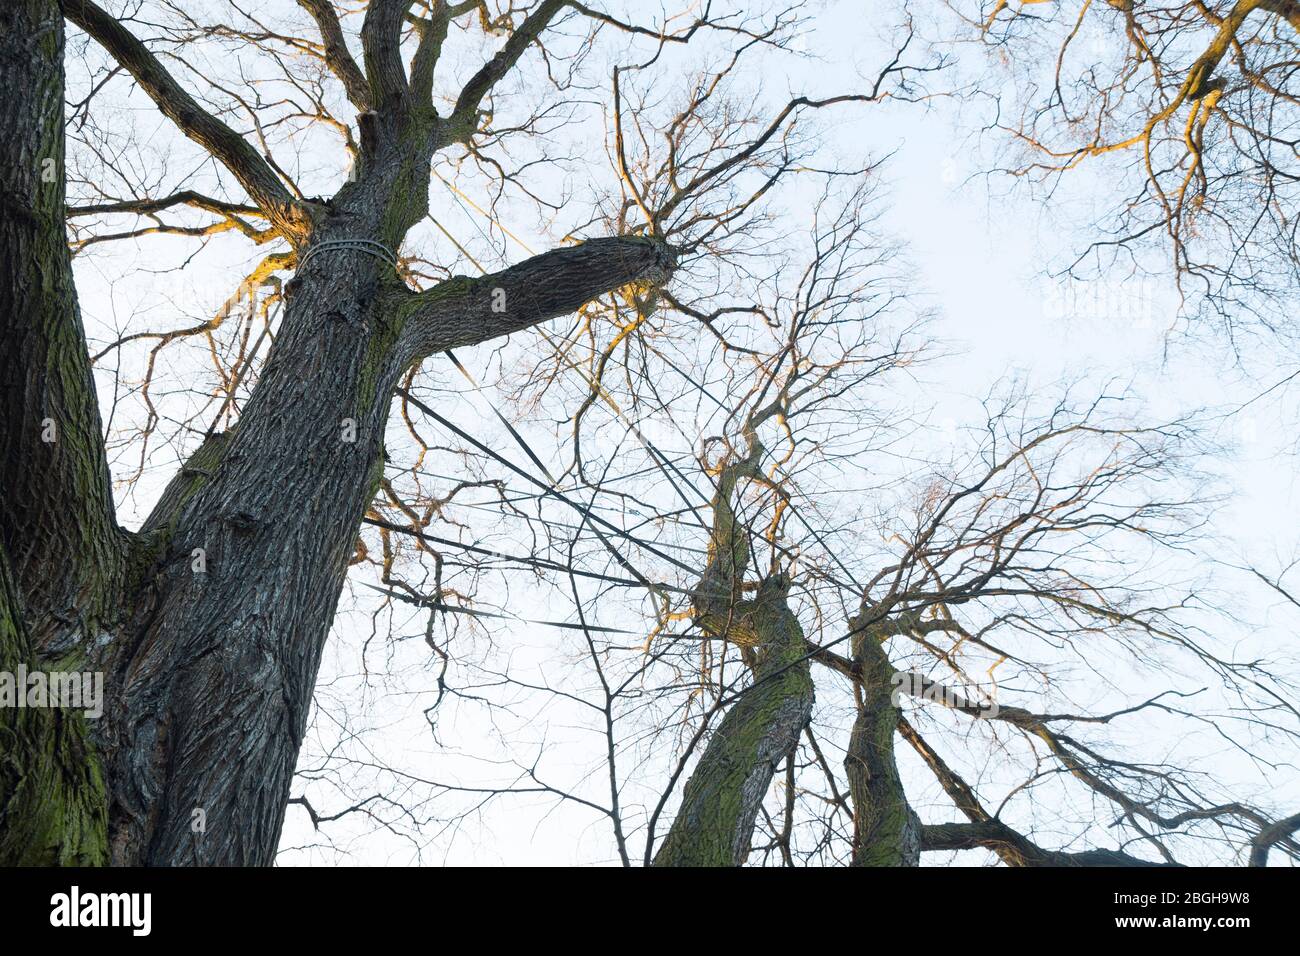 Árbol viejo protegido en / mit bändern gestützter alter Baum / Parque de los Treptower / Belin Foto de stock